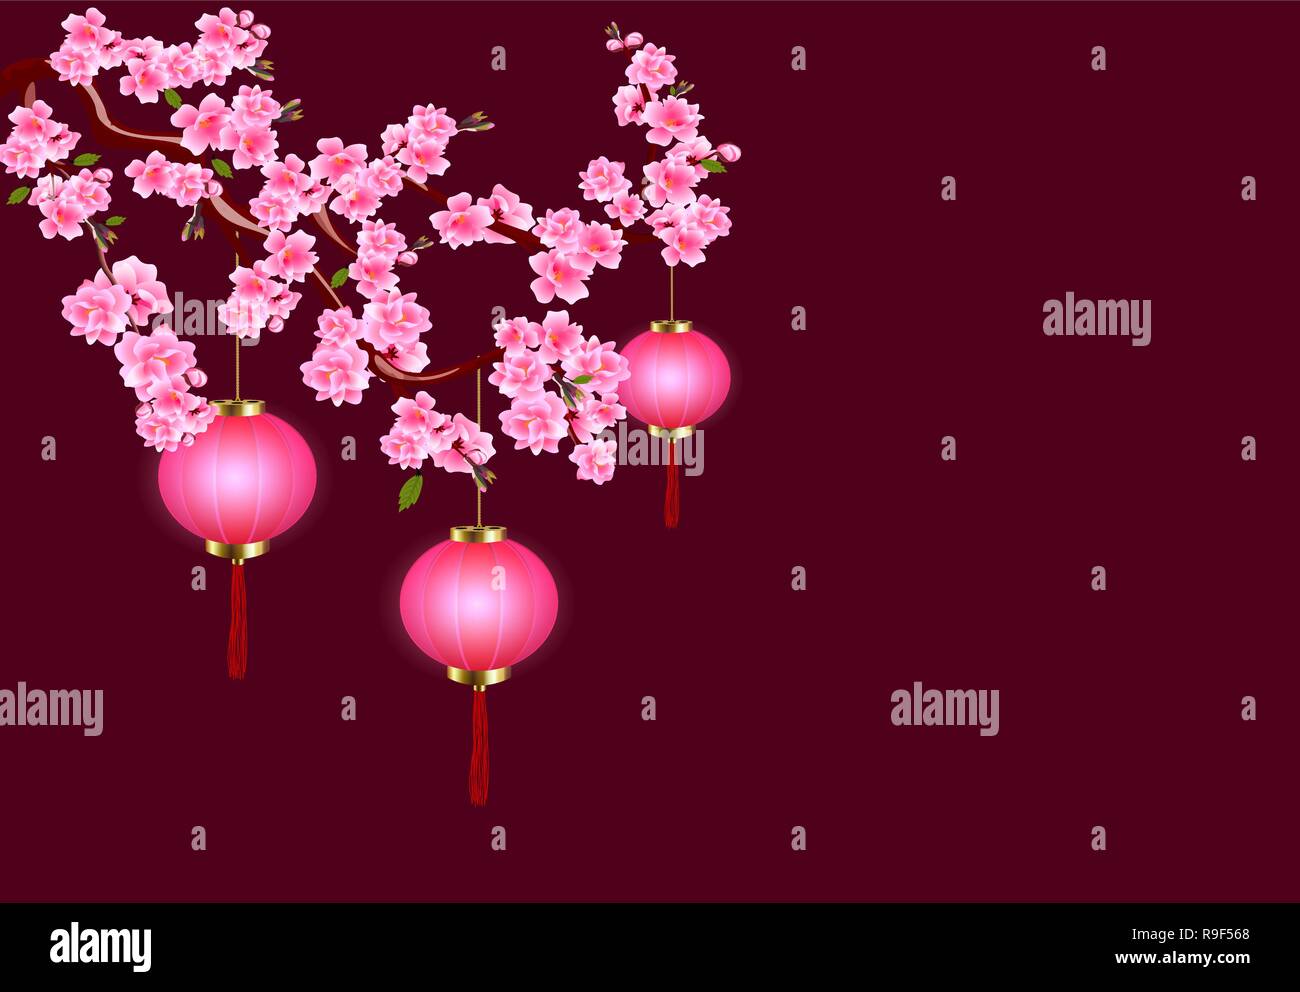 Das chinesische Neujahr. Sakura und lila Laternen. Cherry Blumen mit Knospen und Blätter am Zweig. Der dunkle Hintergrund. Abbildung Stock Vektor